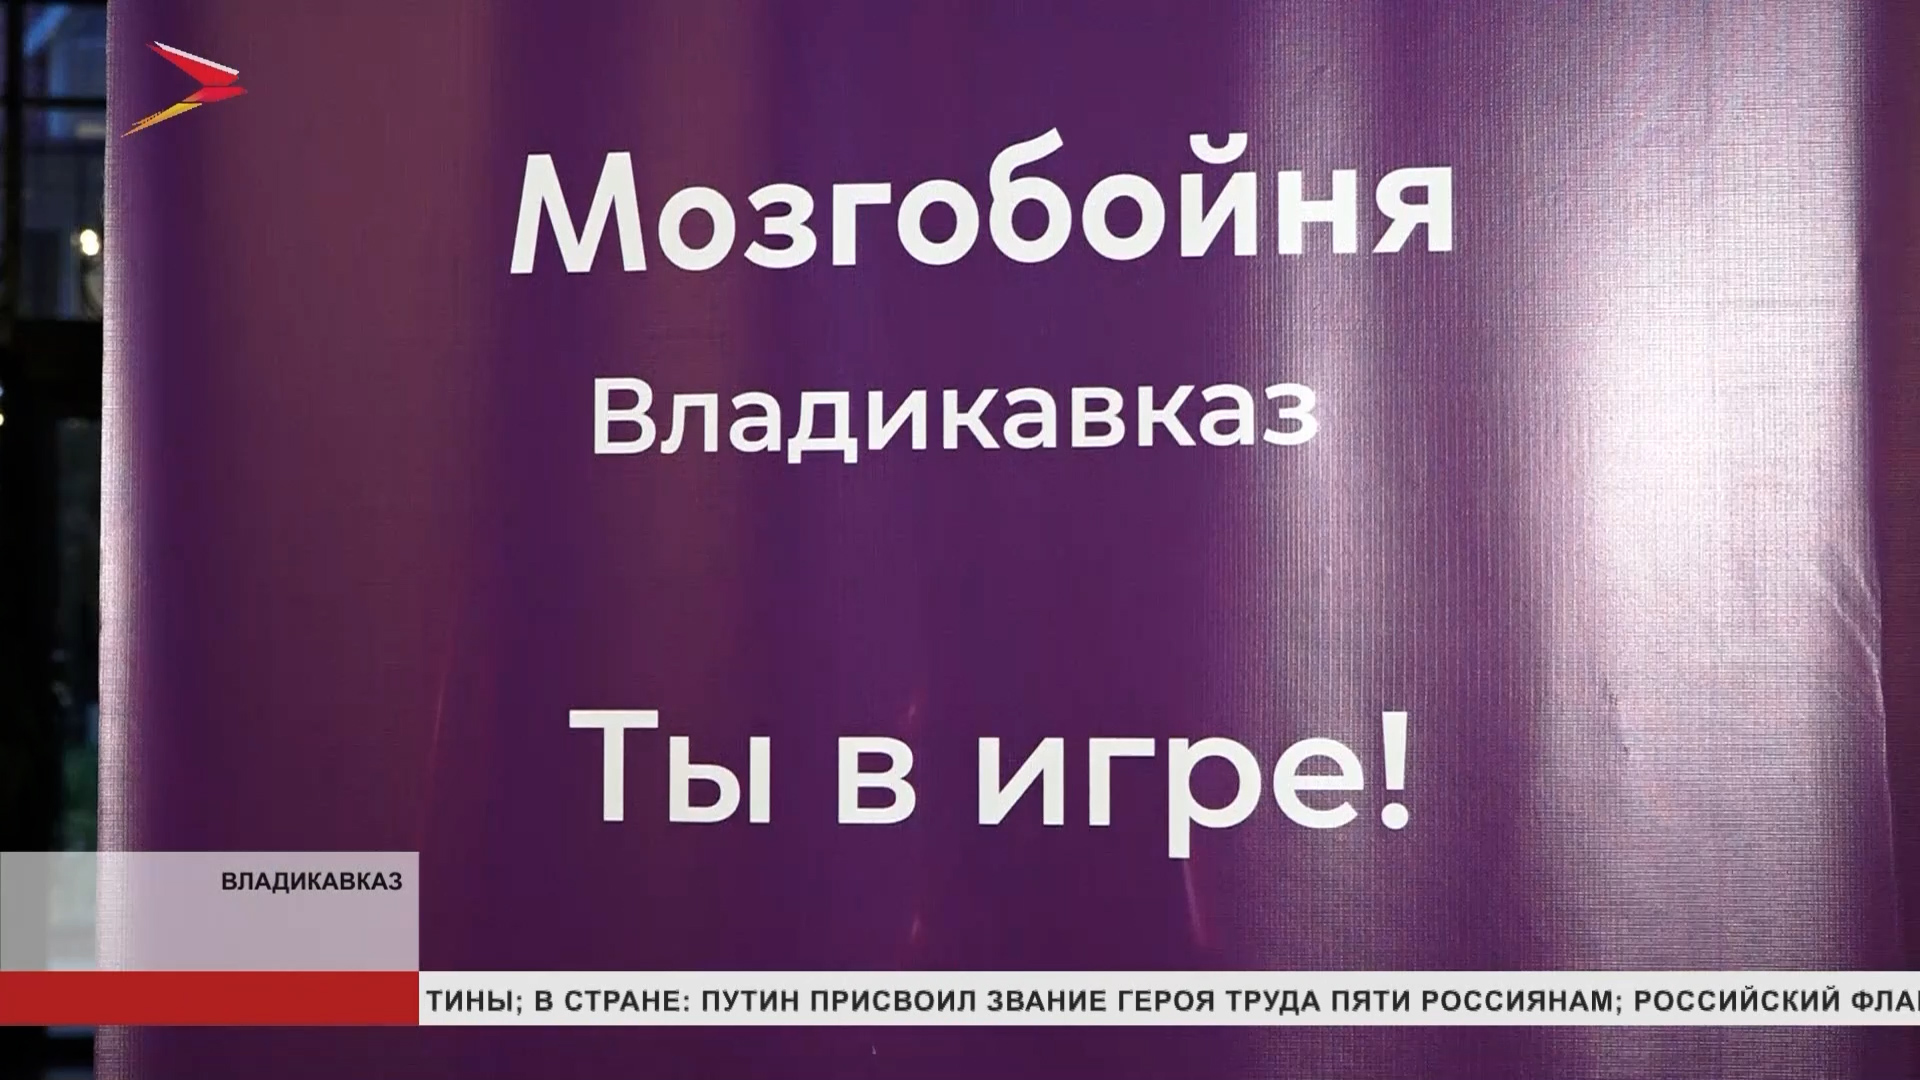 Во Владикавказе состоялась очередная интеллектуальная игра Мозгобойня - "Большой киноквиз"